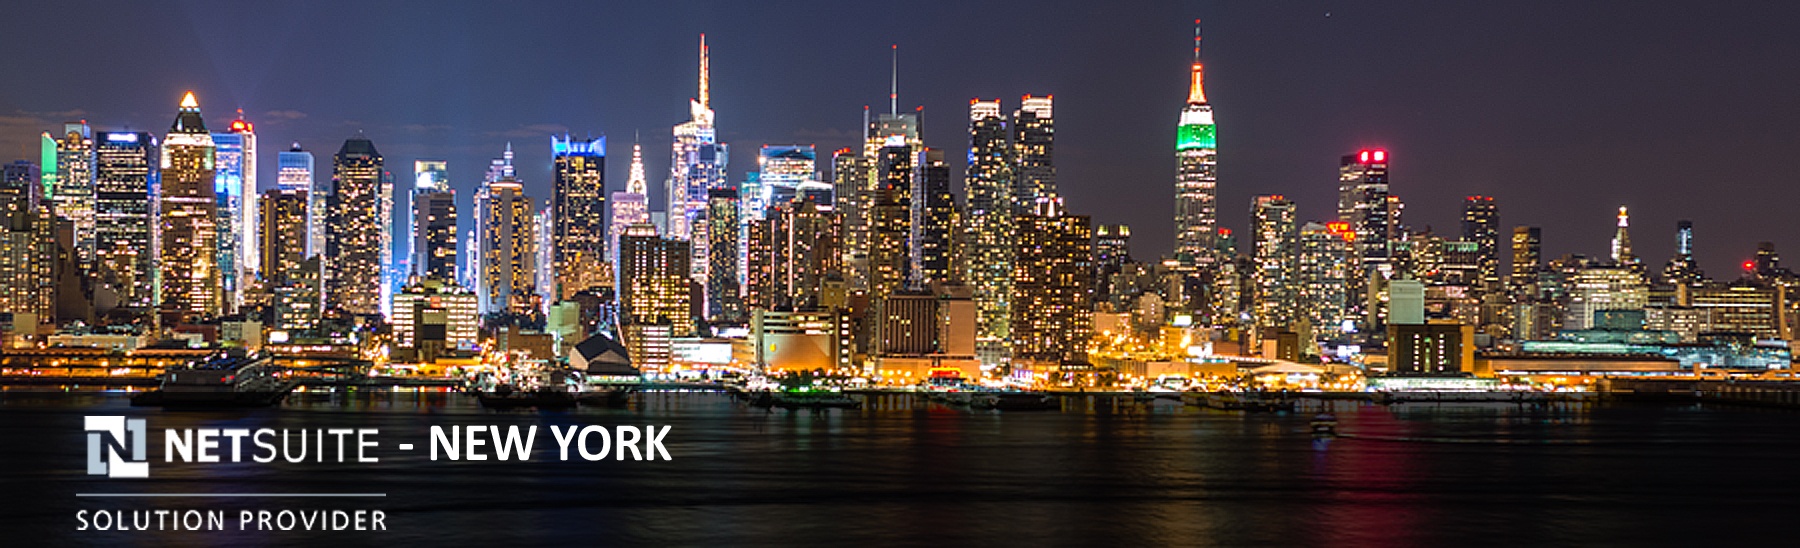 New-York-NetSuite-Partner.jpg